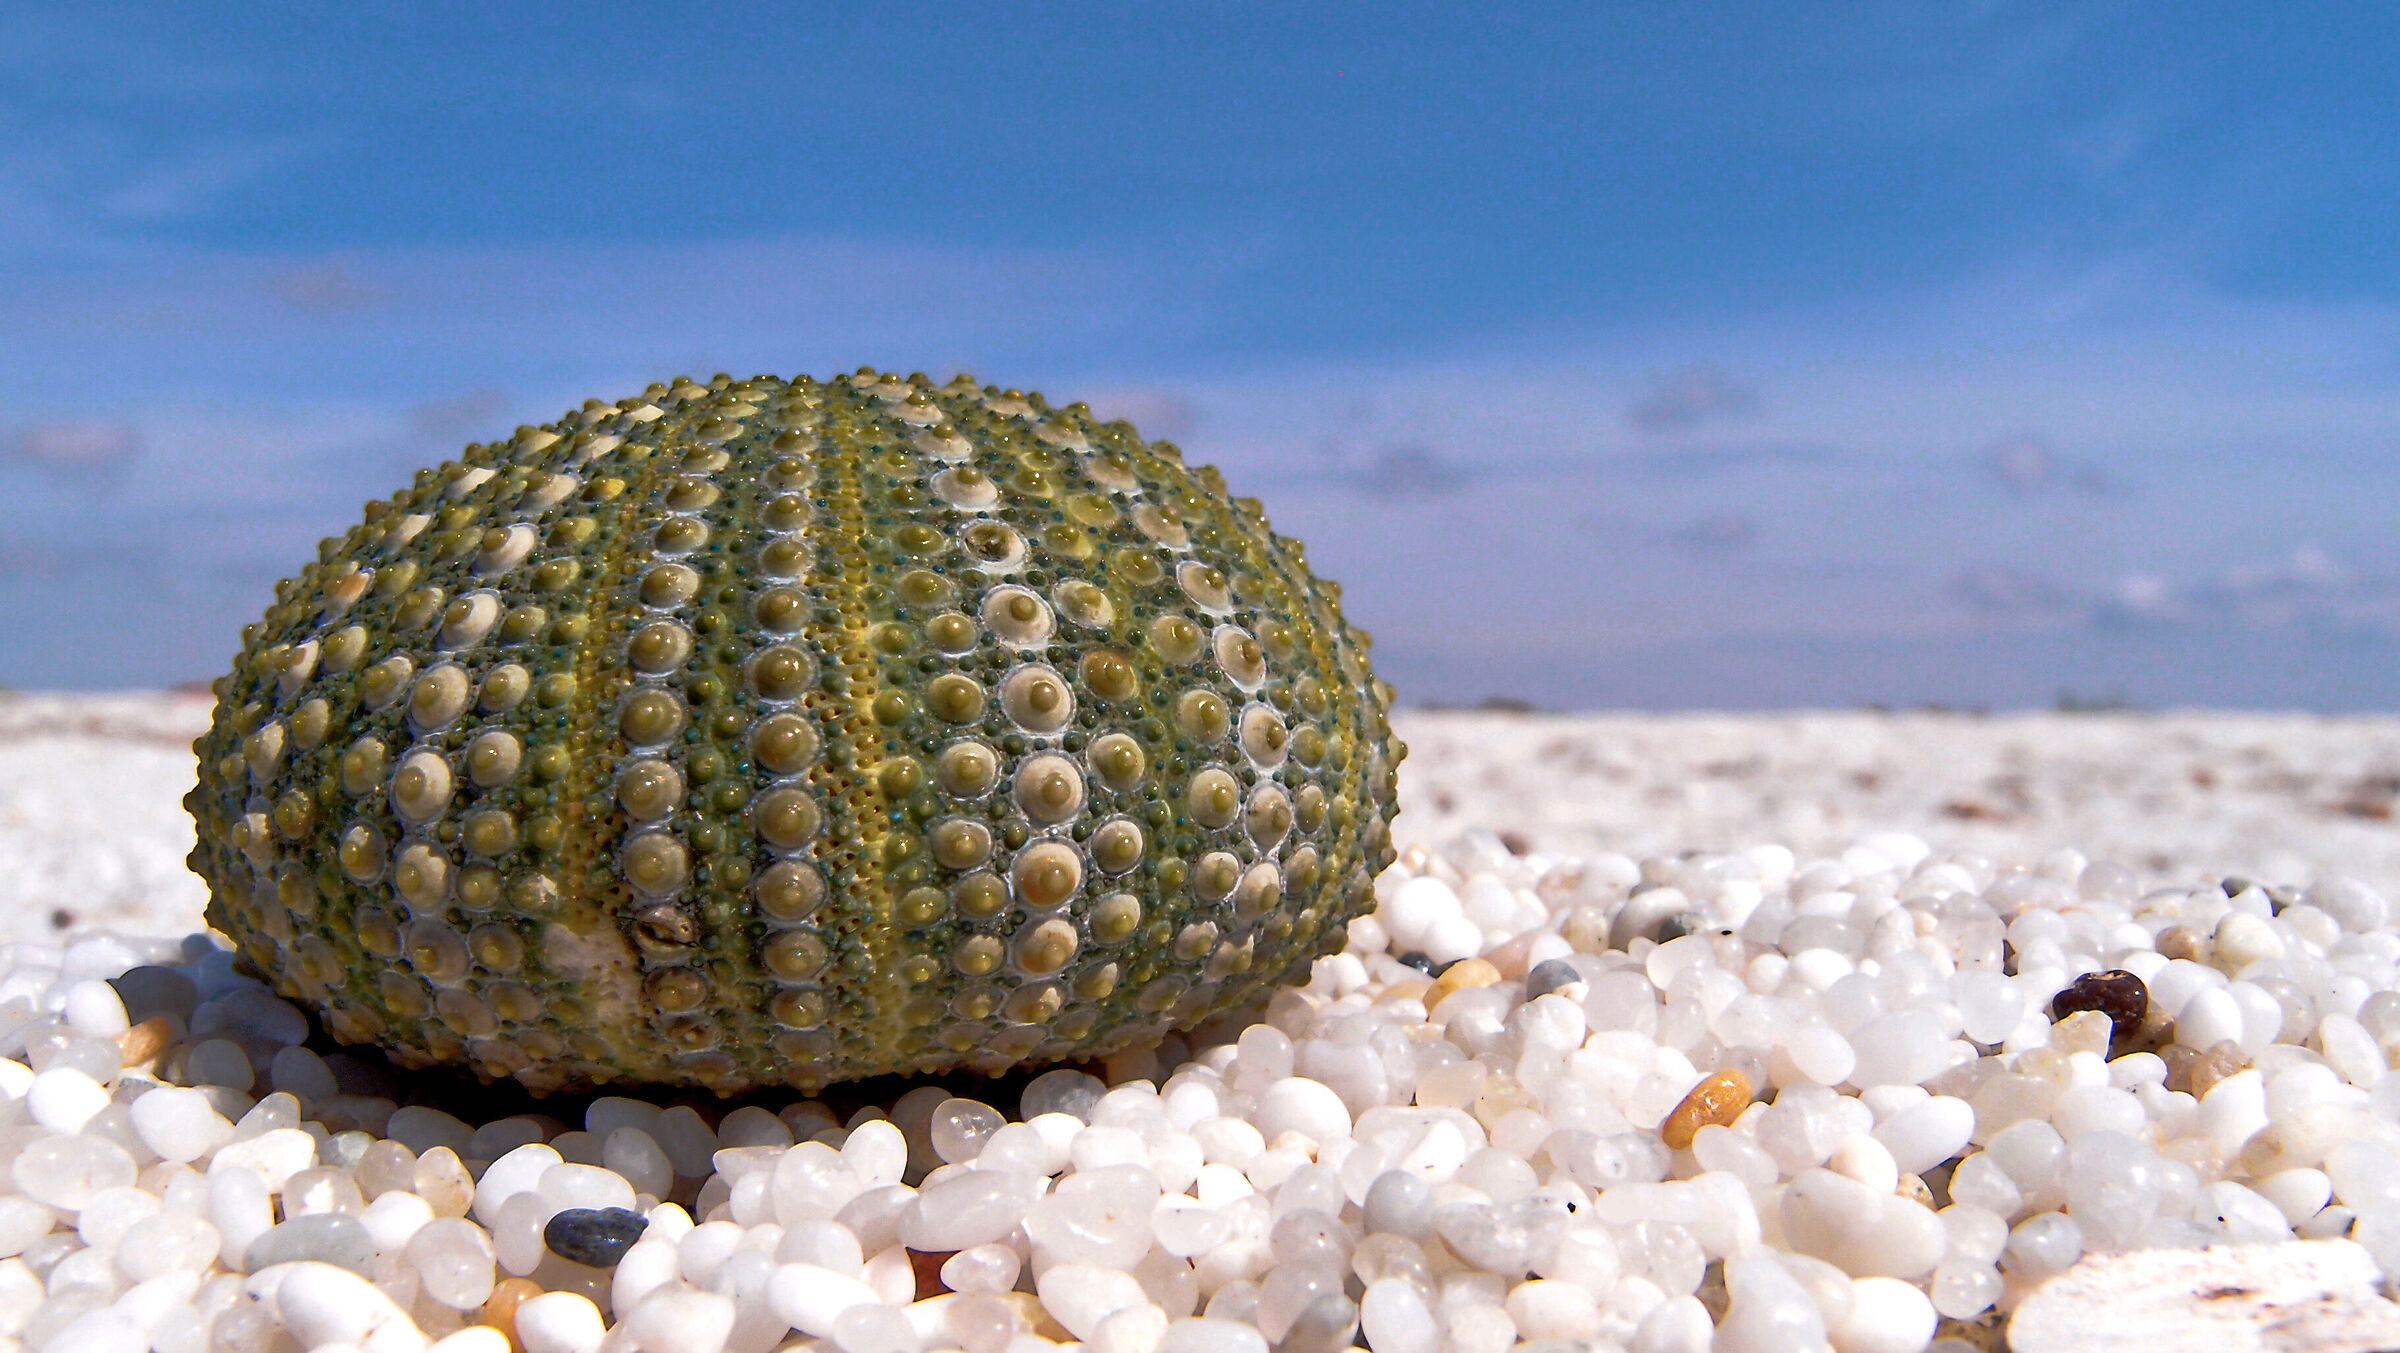 Hedgehog shell on beach of quartz grains...